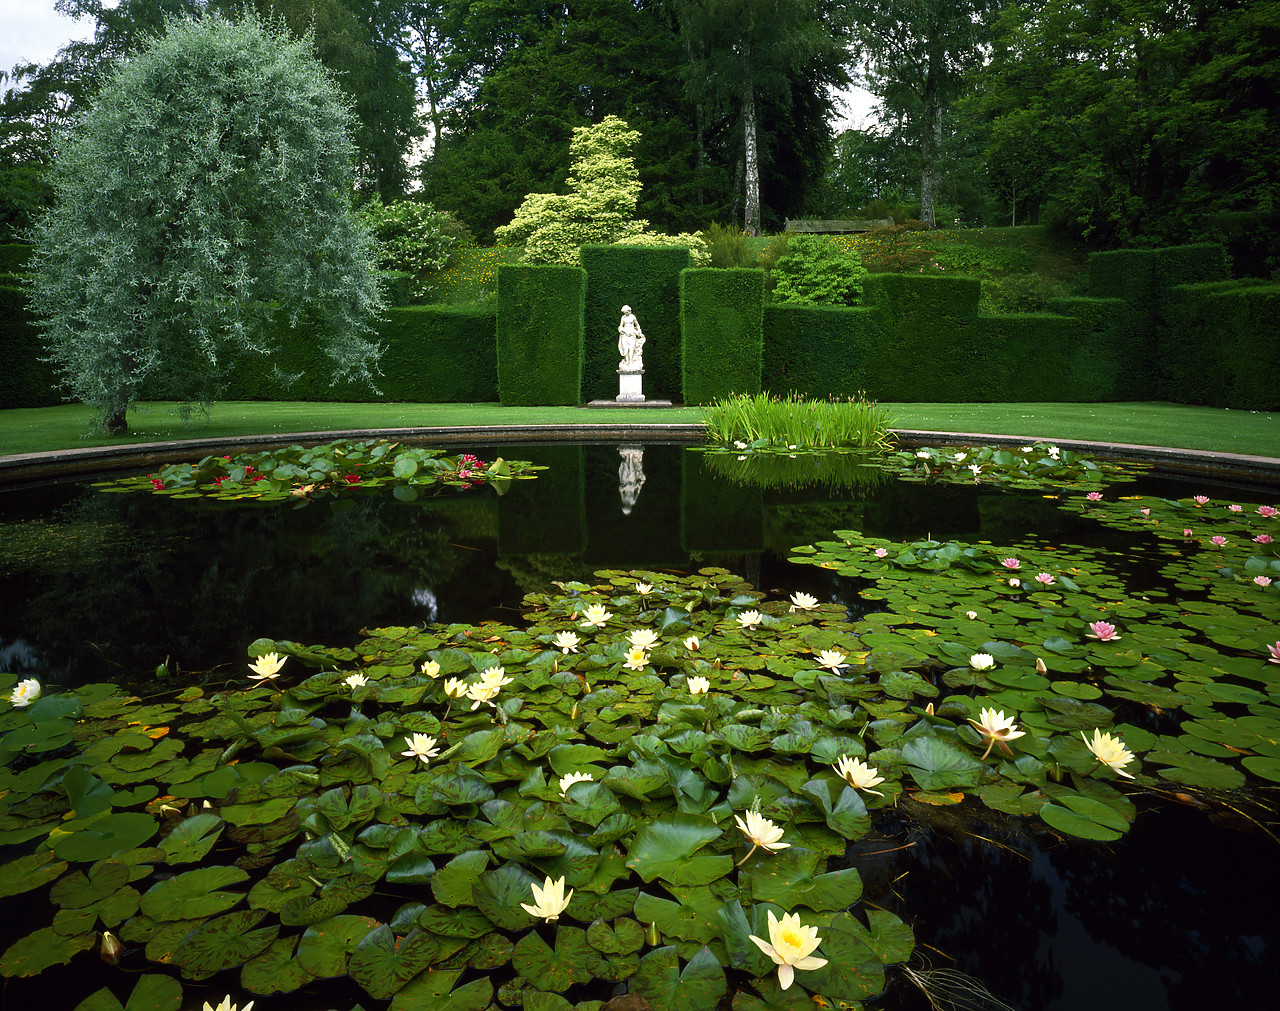 #913479-1 - Garden Lily Pond, Knightshayes Court, Devon, England